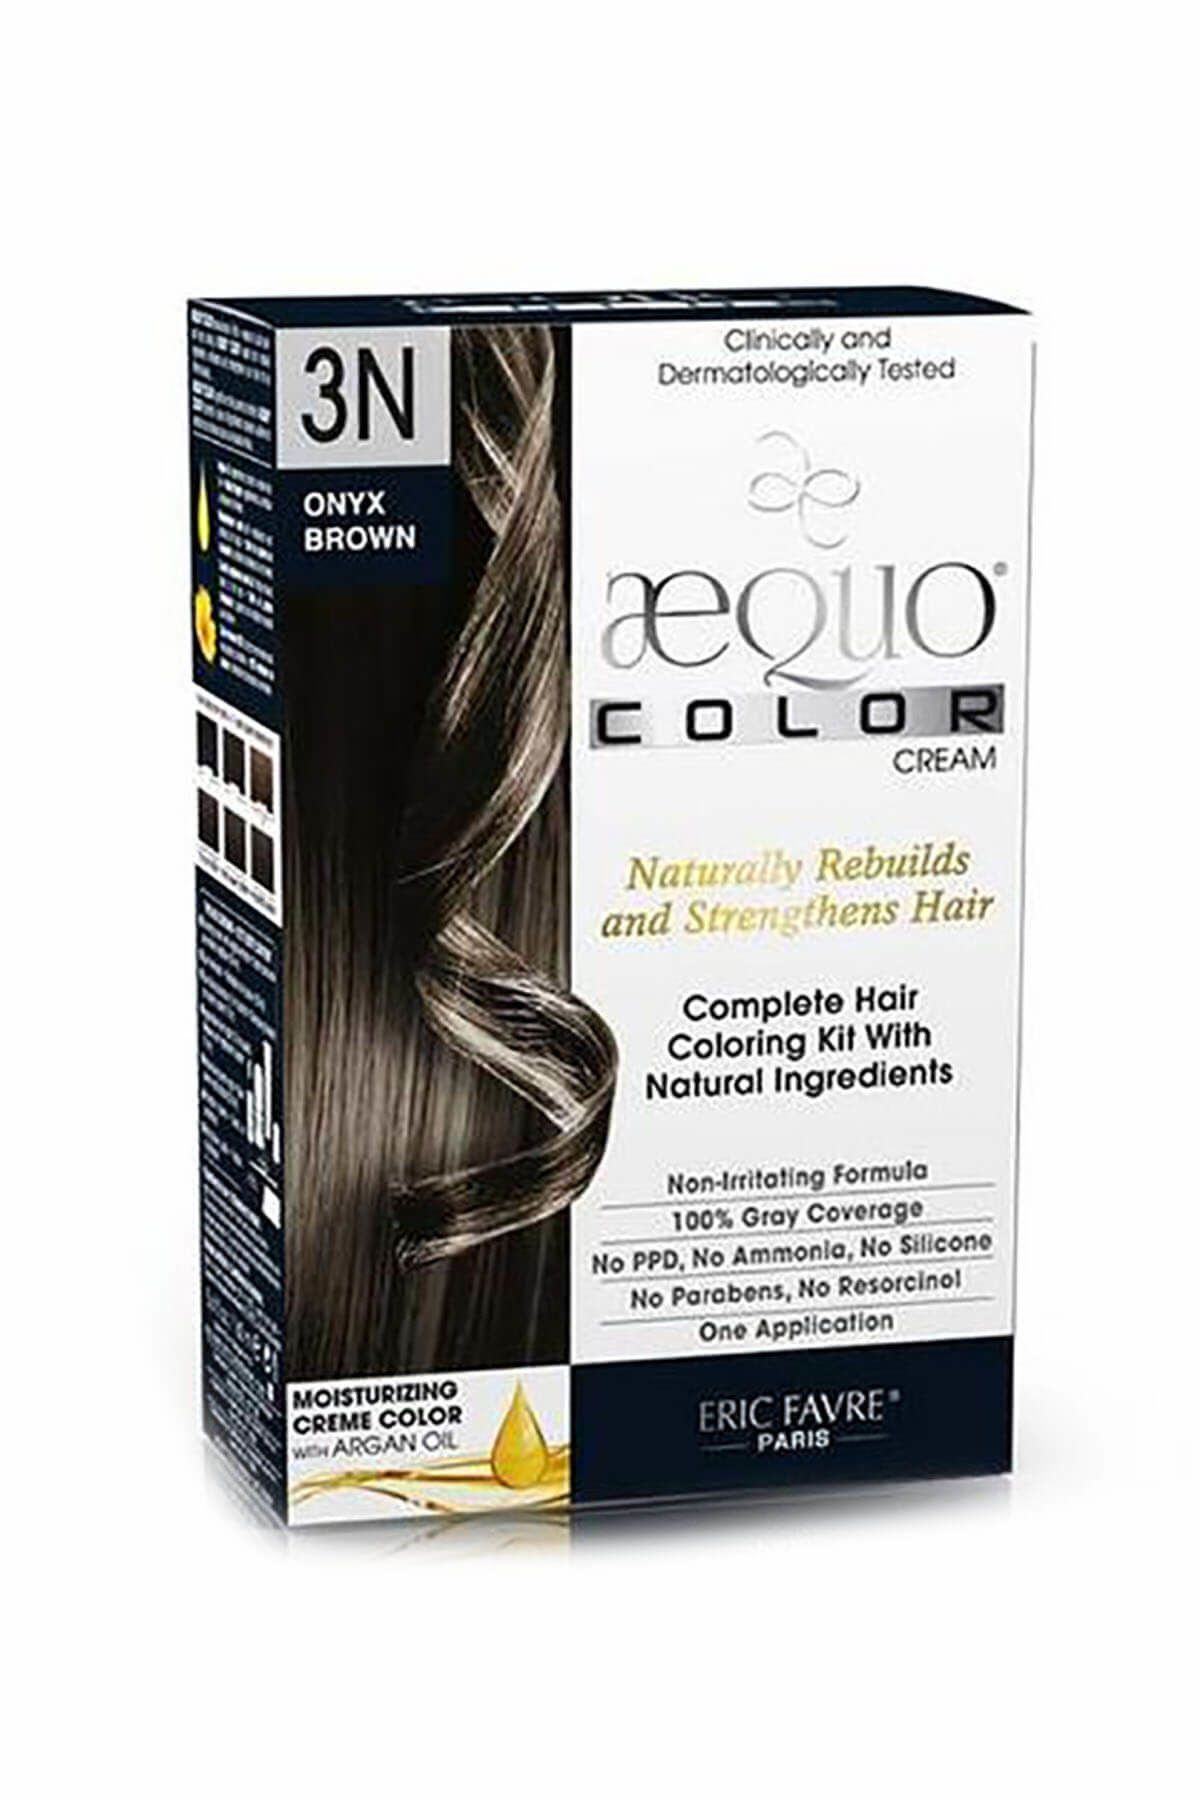 aequo color Organik Akik Koyu Kahverengi Saç Boyası - 3N Onyx Brown 3525722013512